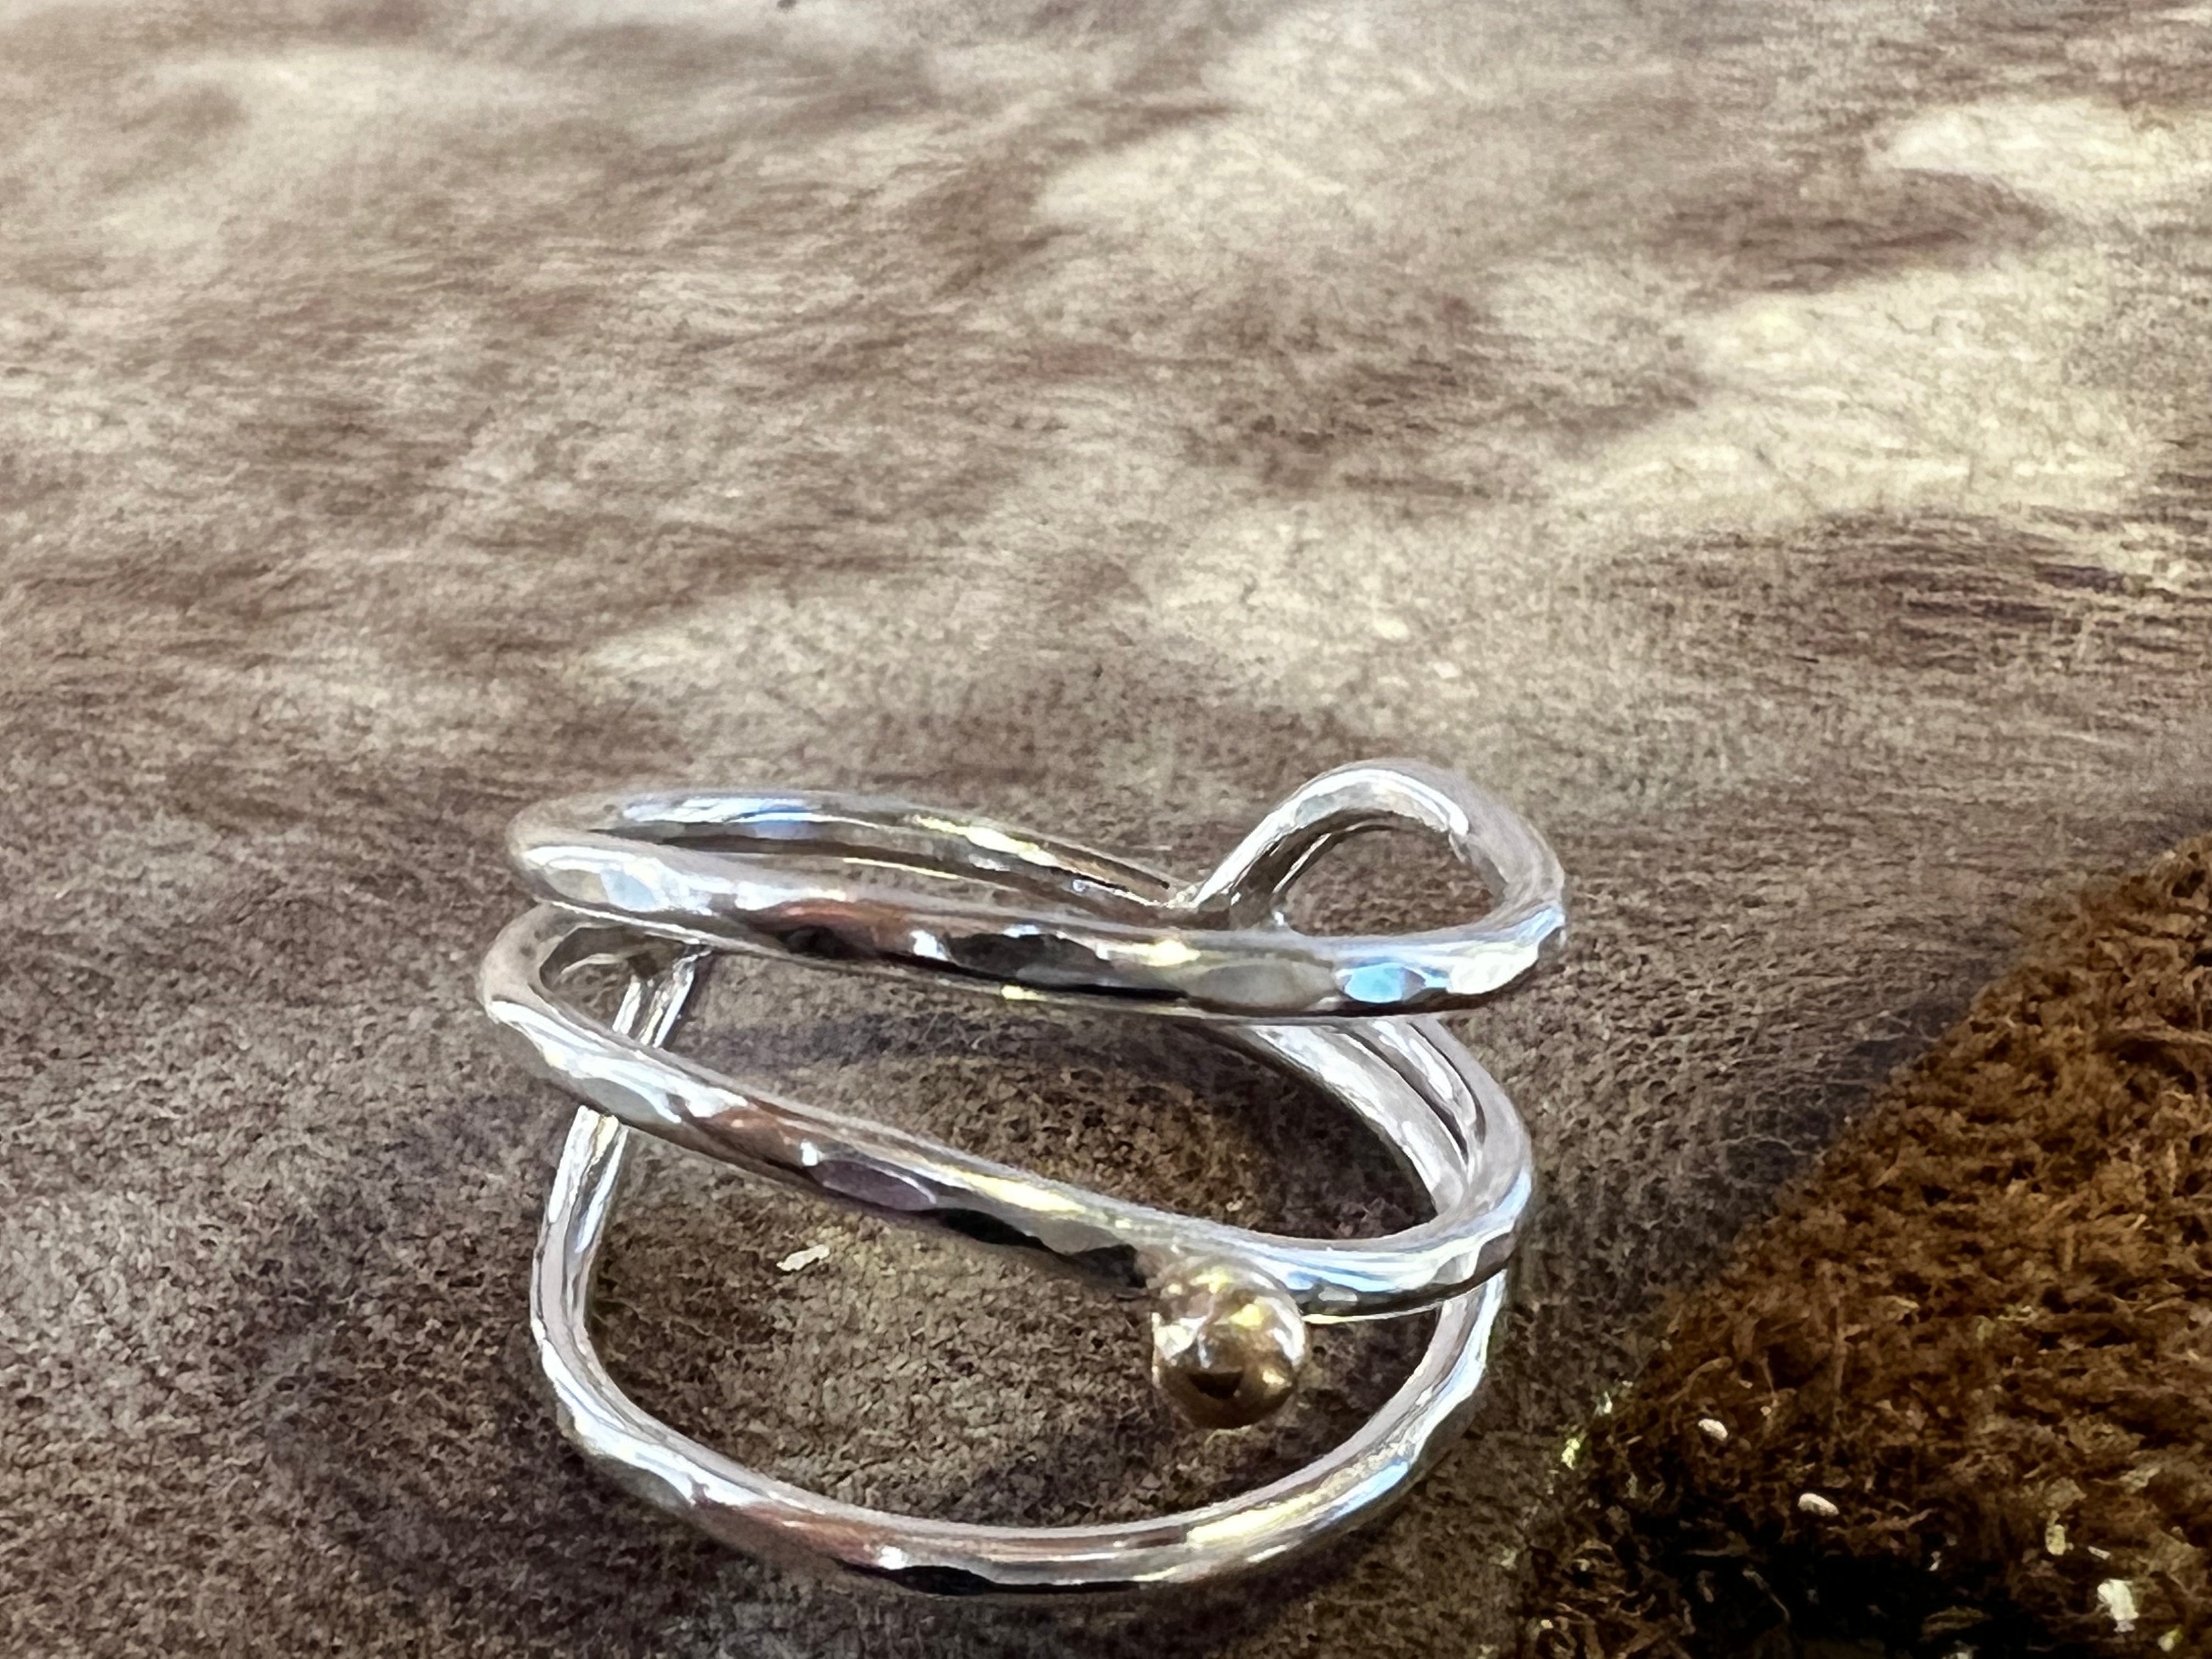 Havglimt ring af fine sølvtråde og en guldkugle